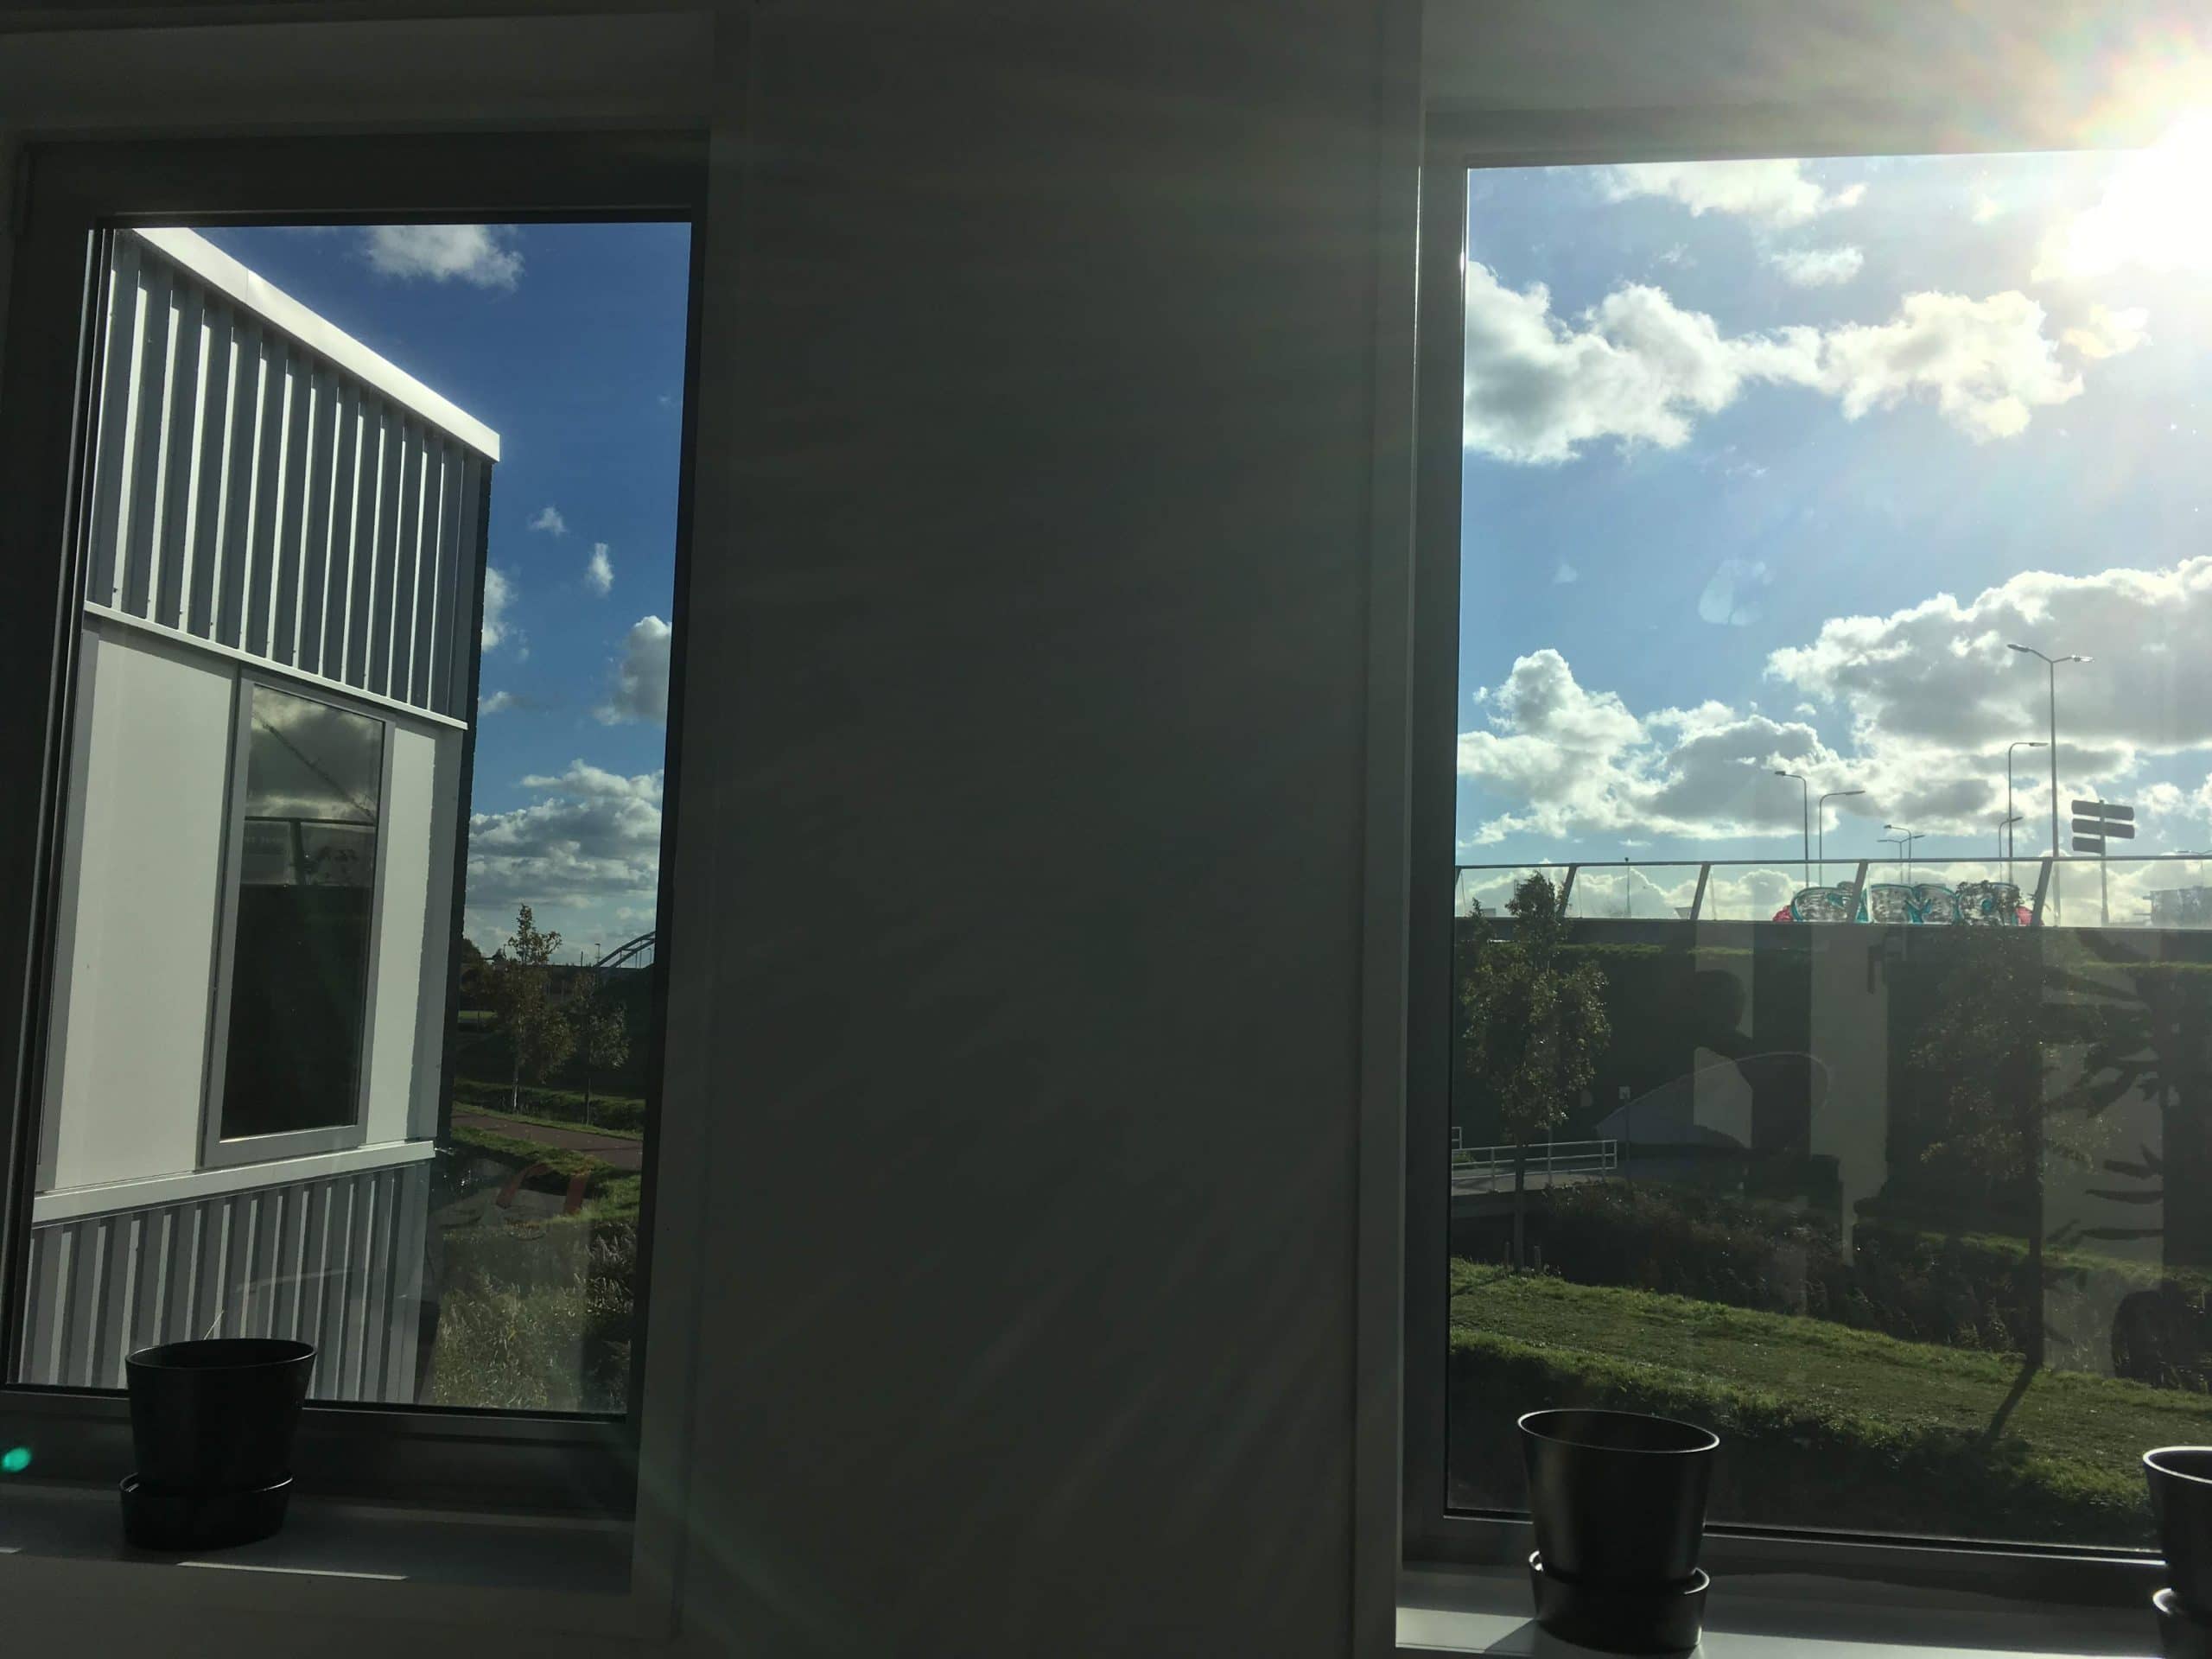 Kantoor voorzien van Sunblock Truevue 30 glasfolie, de hinderlijke schittering op beeldschermen is verdwenen, de zonnewarmte gereduceerd